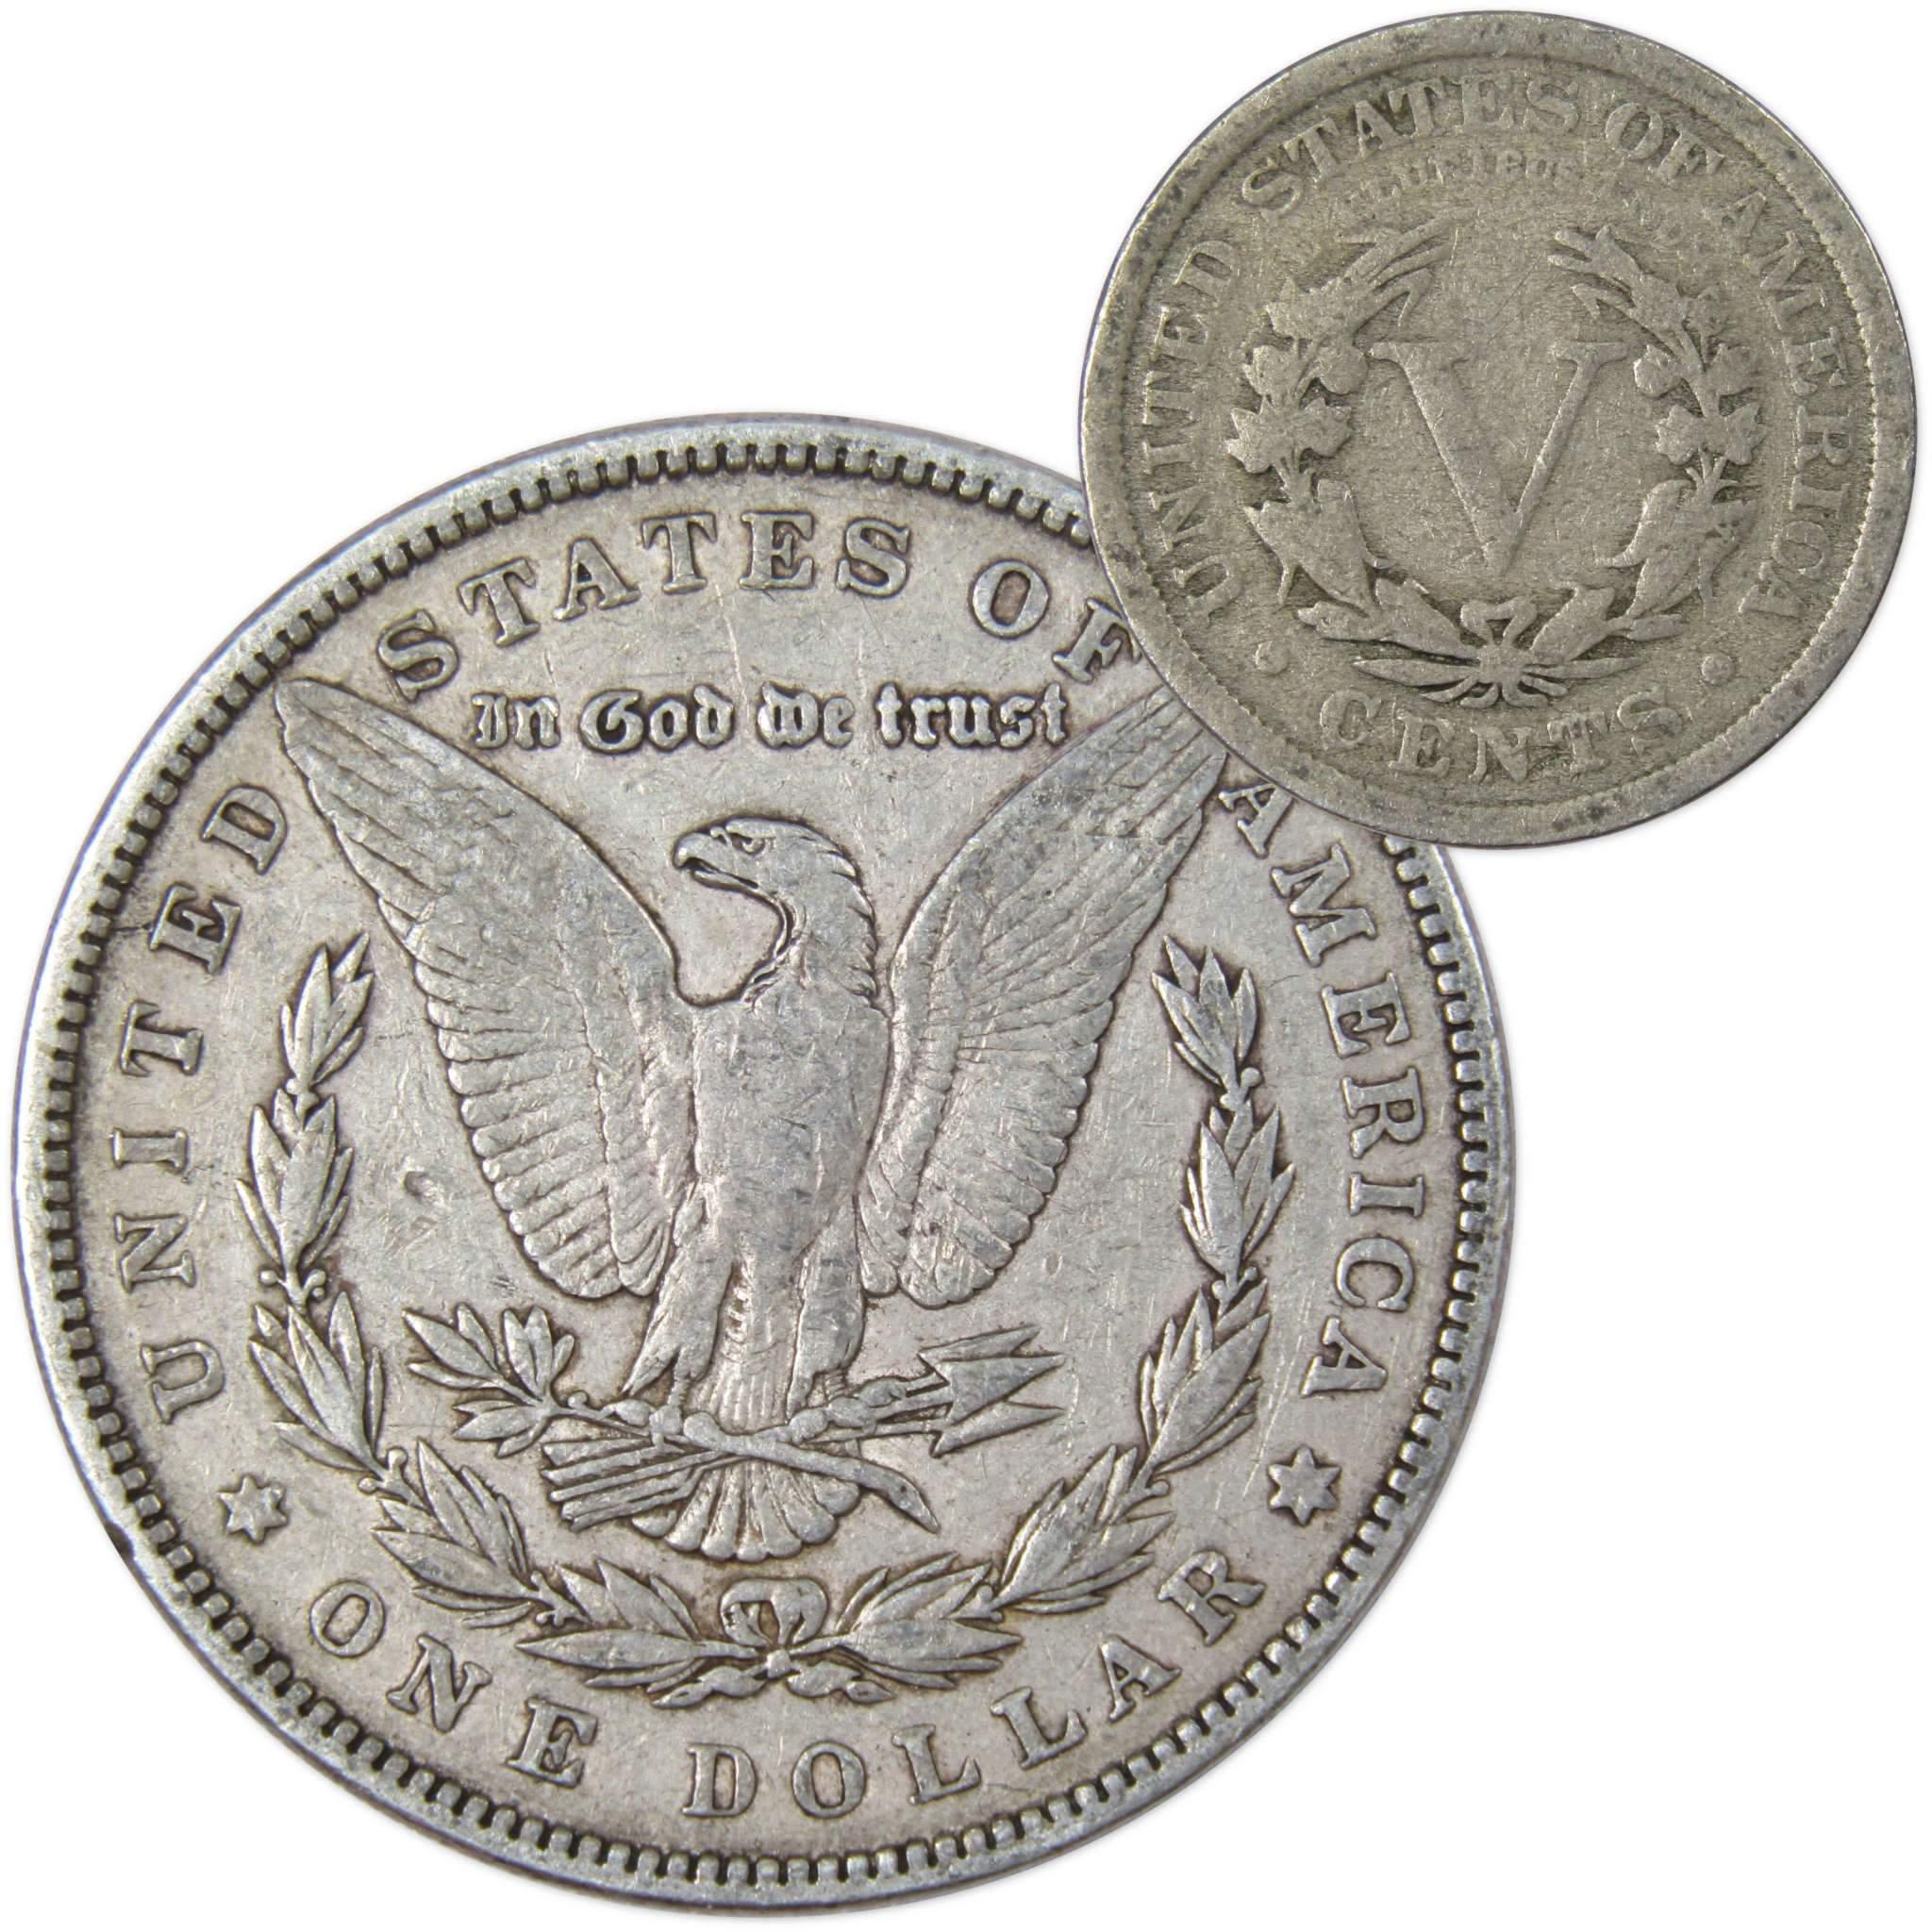 1898 Morgan Dollar VF Very Fine 90% Silver Coin with 1910 Liberty Nickel G Good - Morgan coin - Morgan silver dollar - Morgan silver dollar for sale - Profile Coins &amp; Collectibles